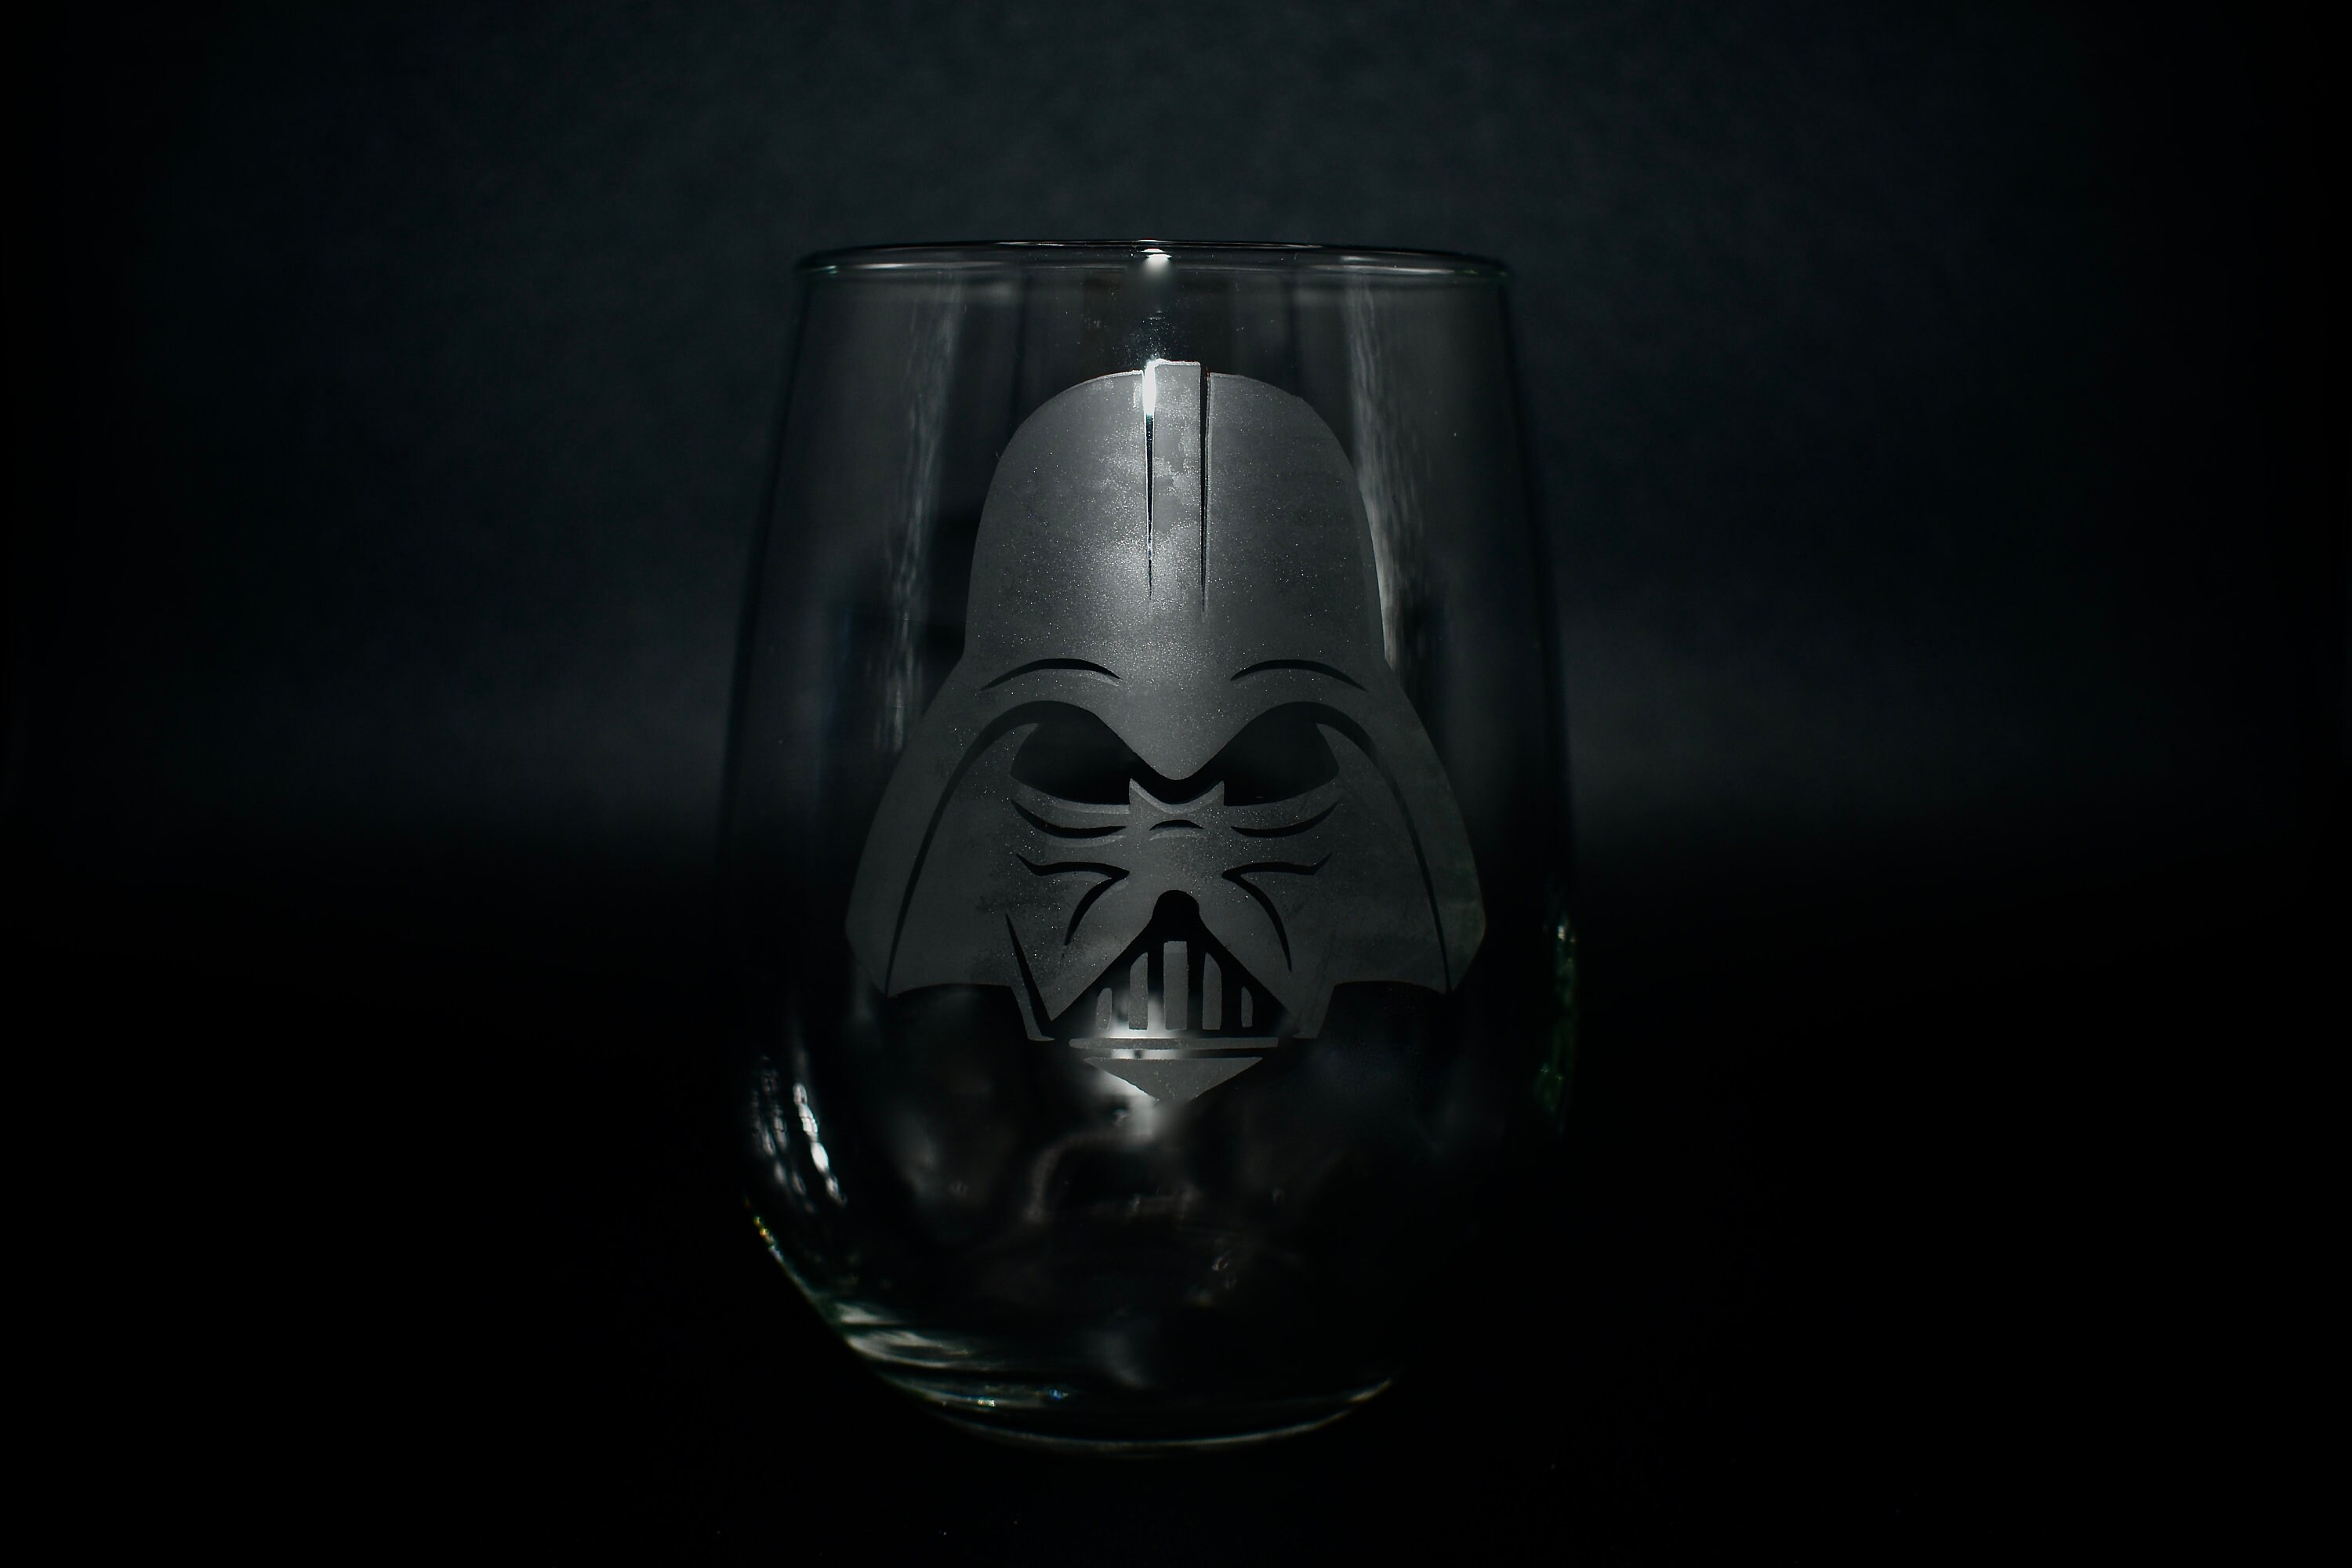 Star Wars Darth Vader inspired Beer Mug by WastedTalentDesigns, $20.00